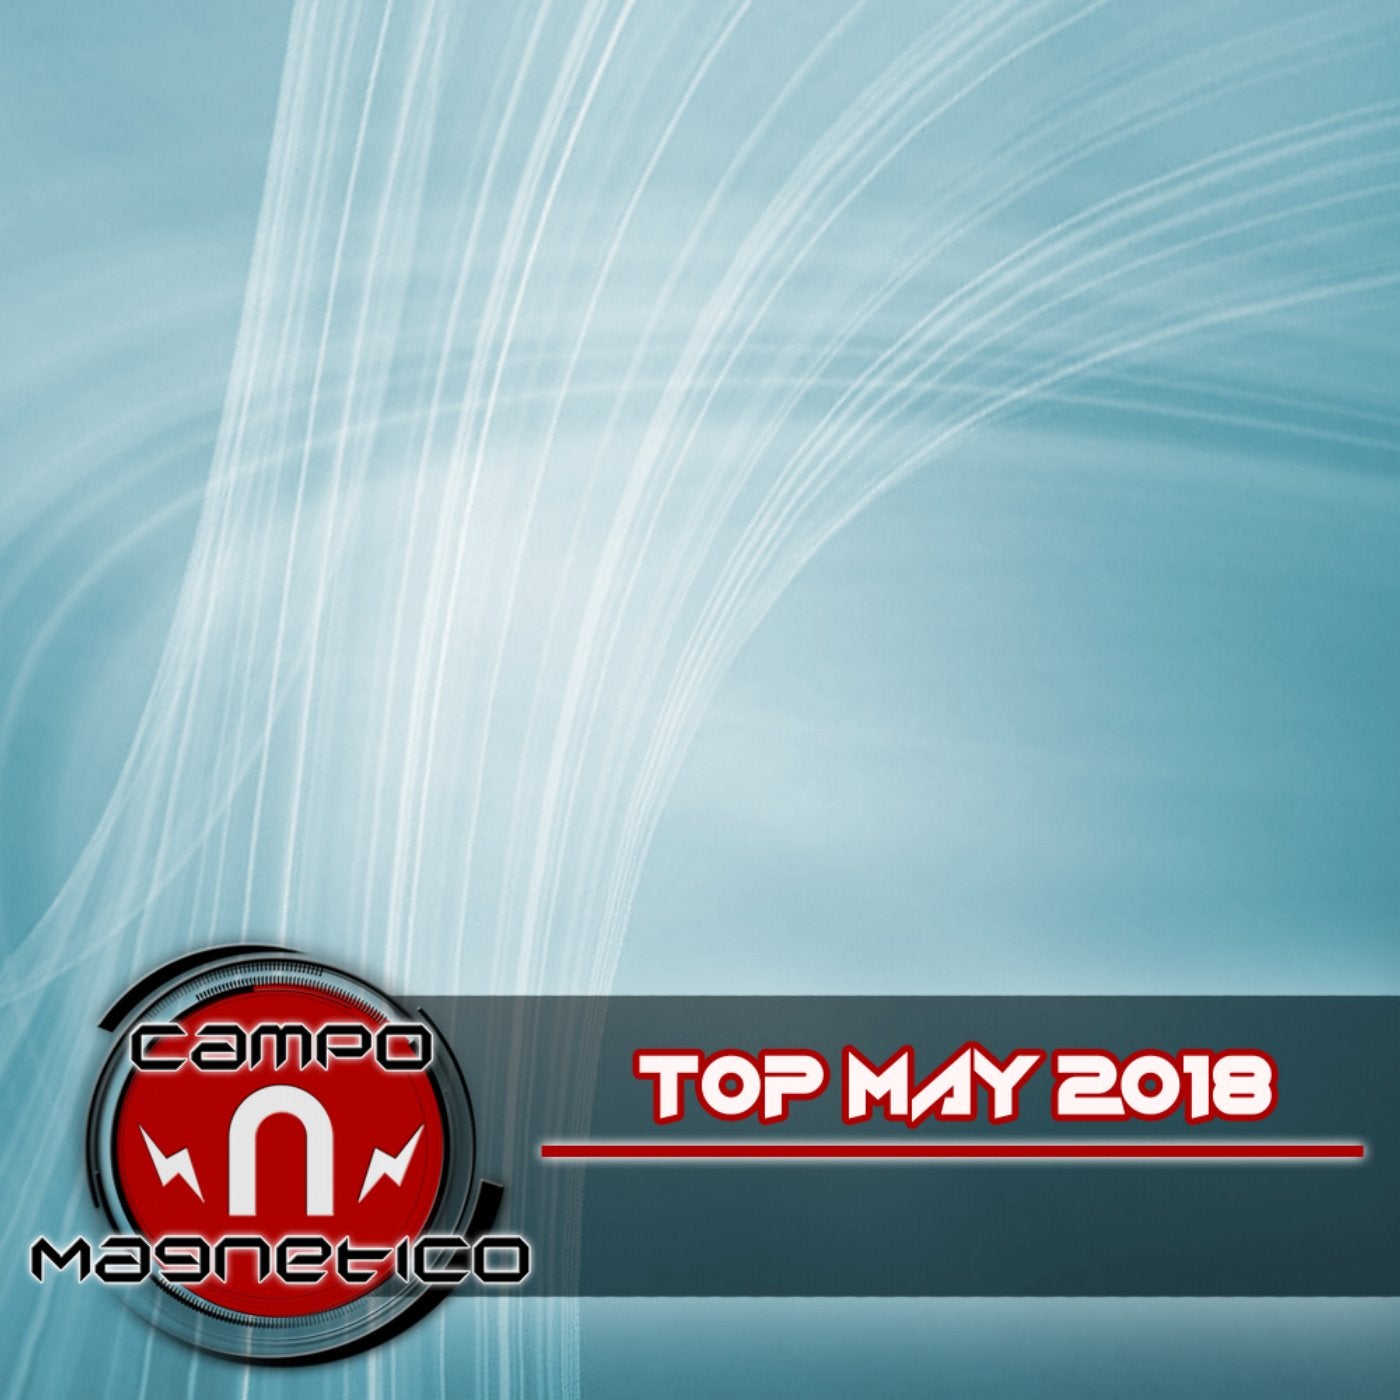 Top May 2018